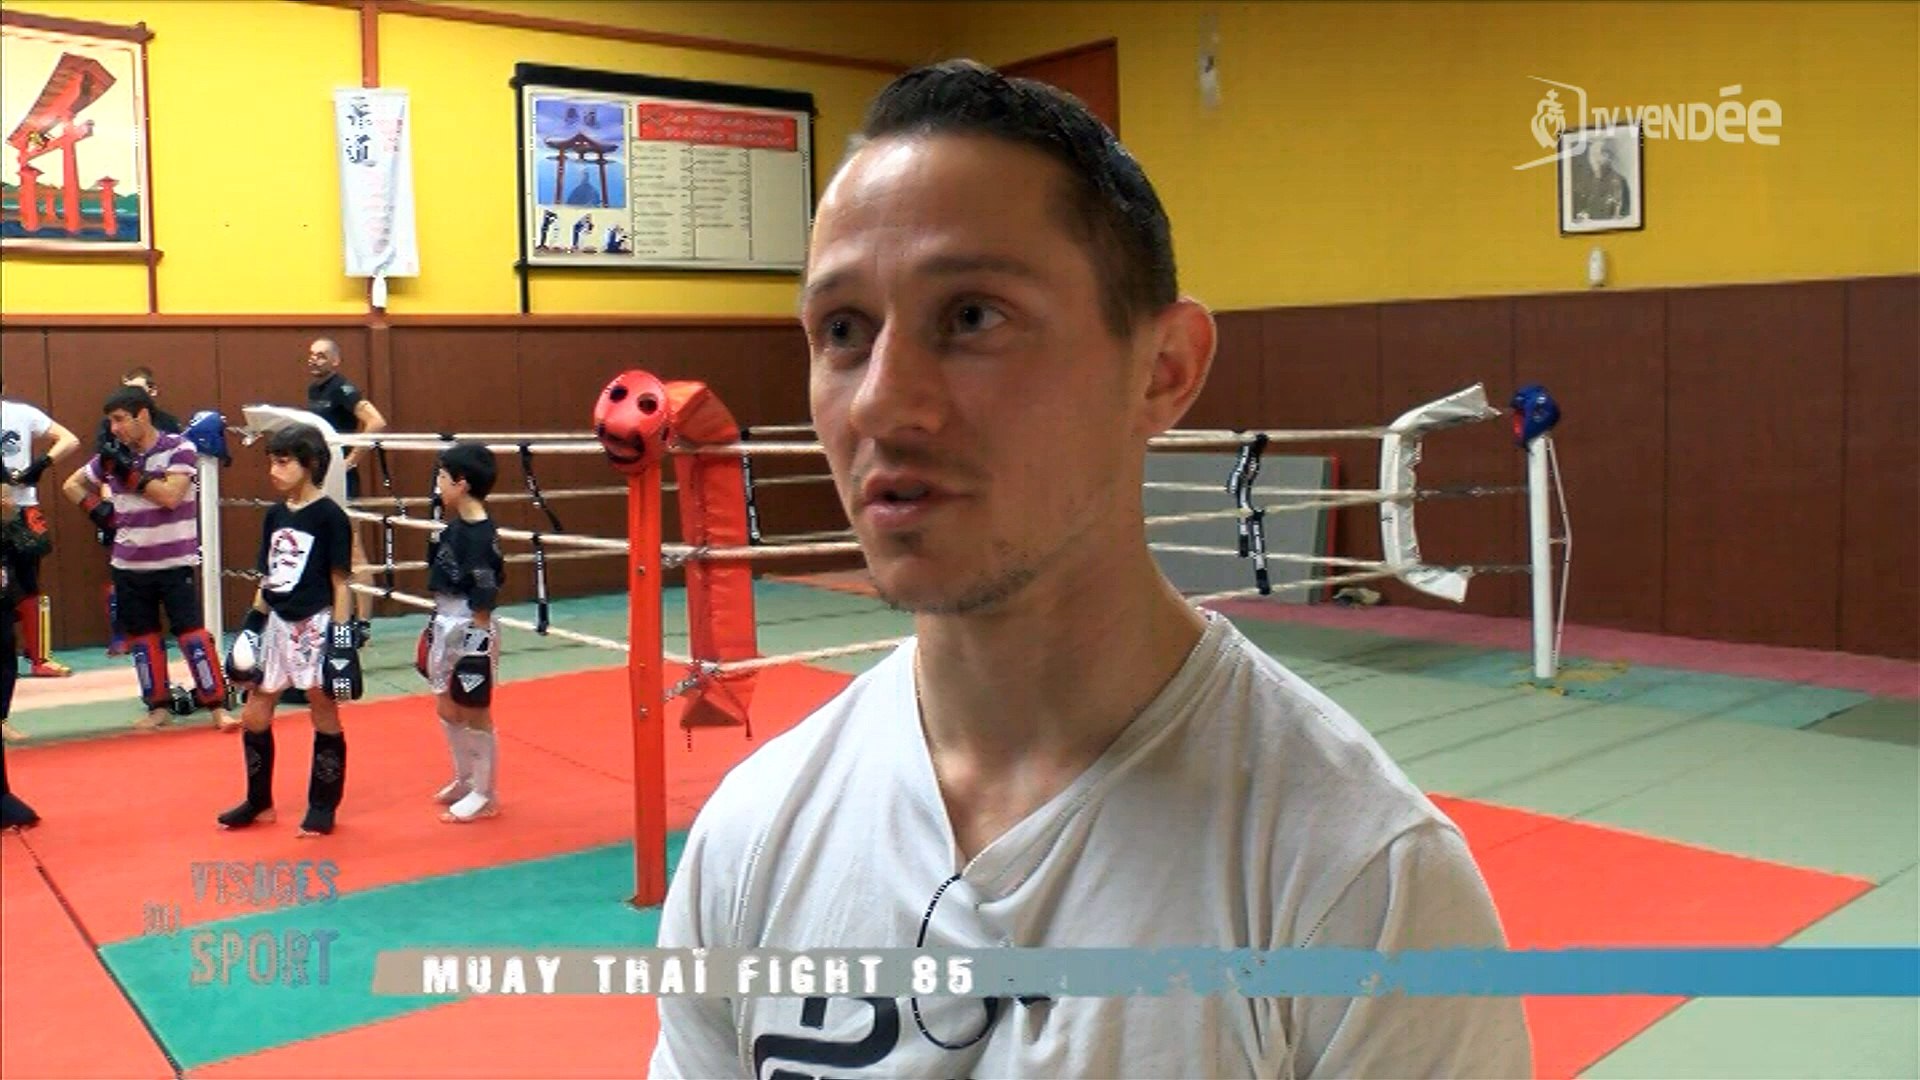 Visages du sport : Muay Thai Fight 85 - Vidéo Dailymotion